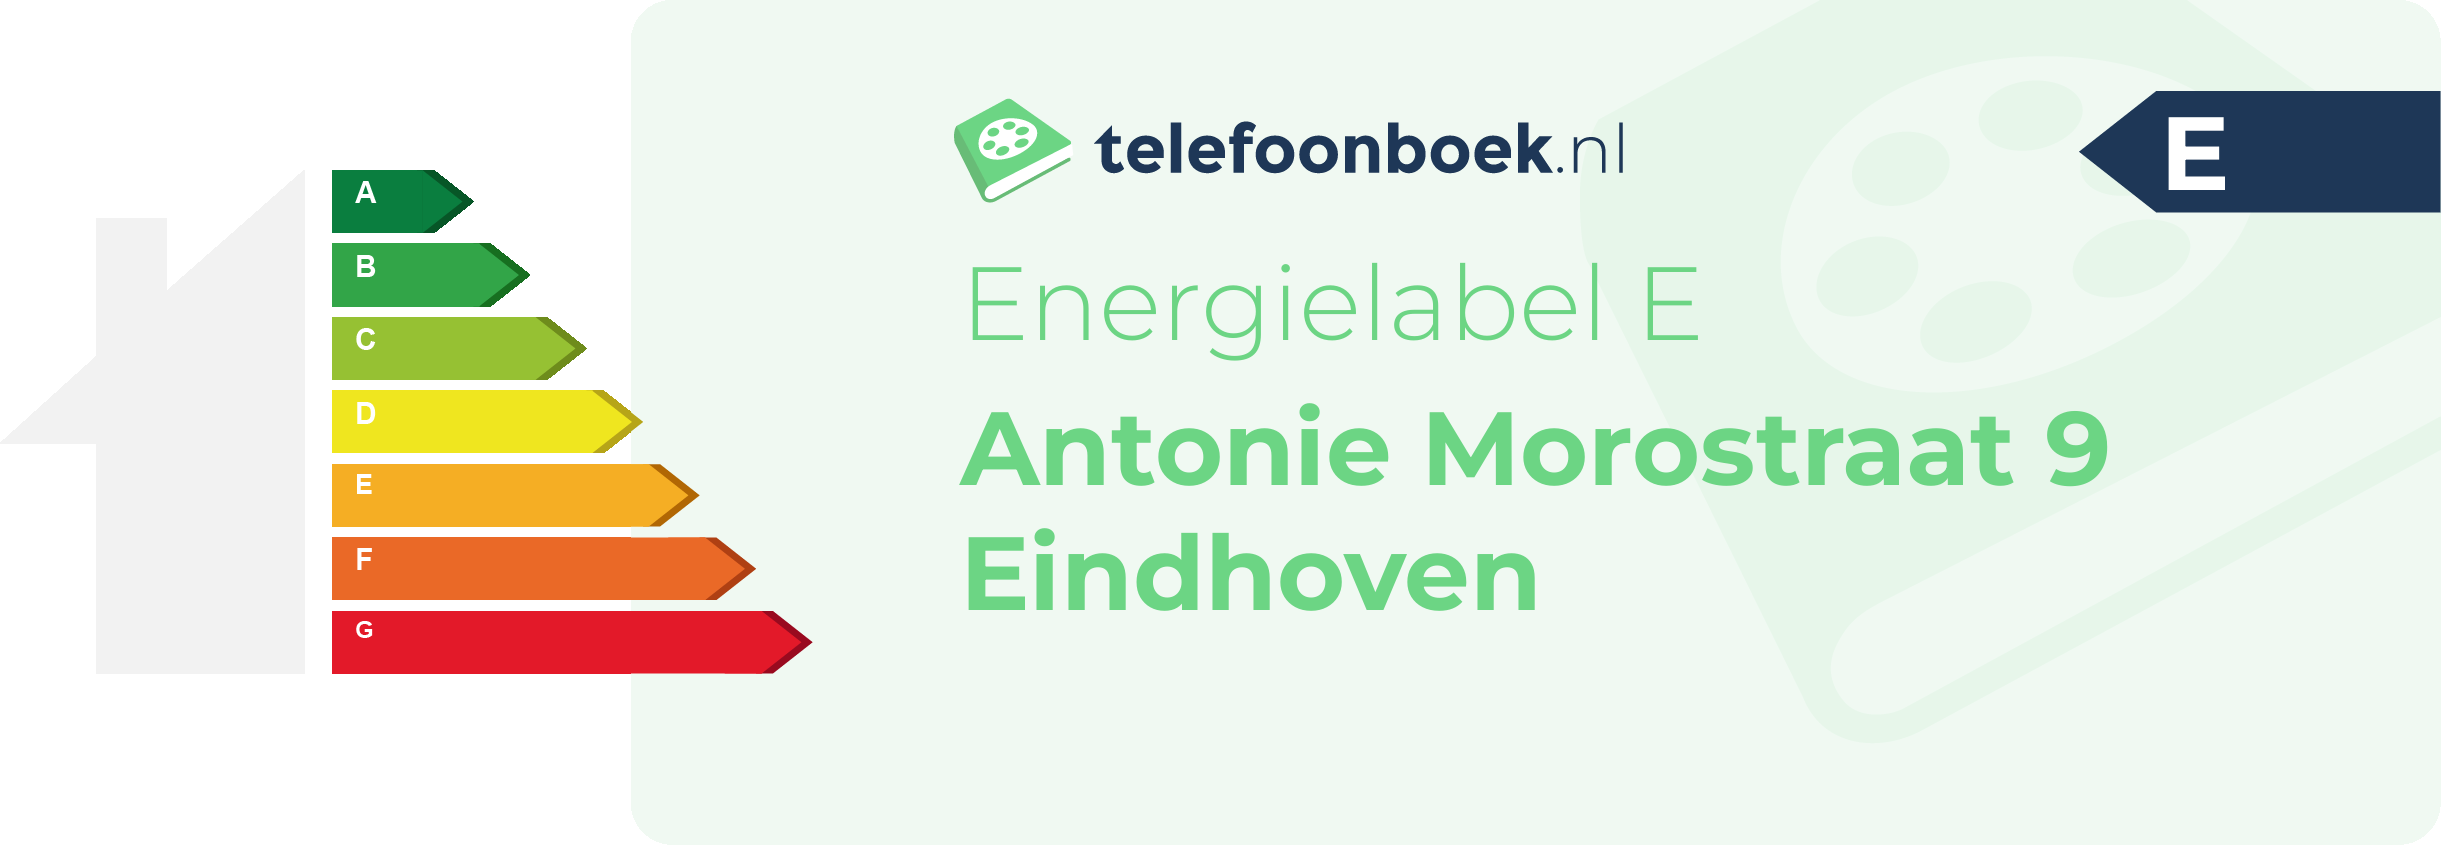 Energielabel Antonie Morostraat 9 Eindhoven